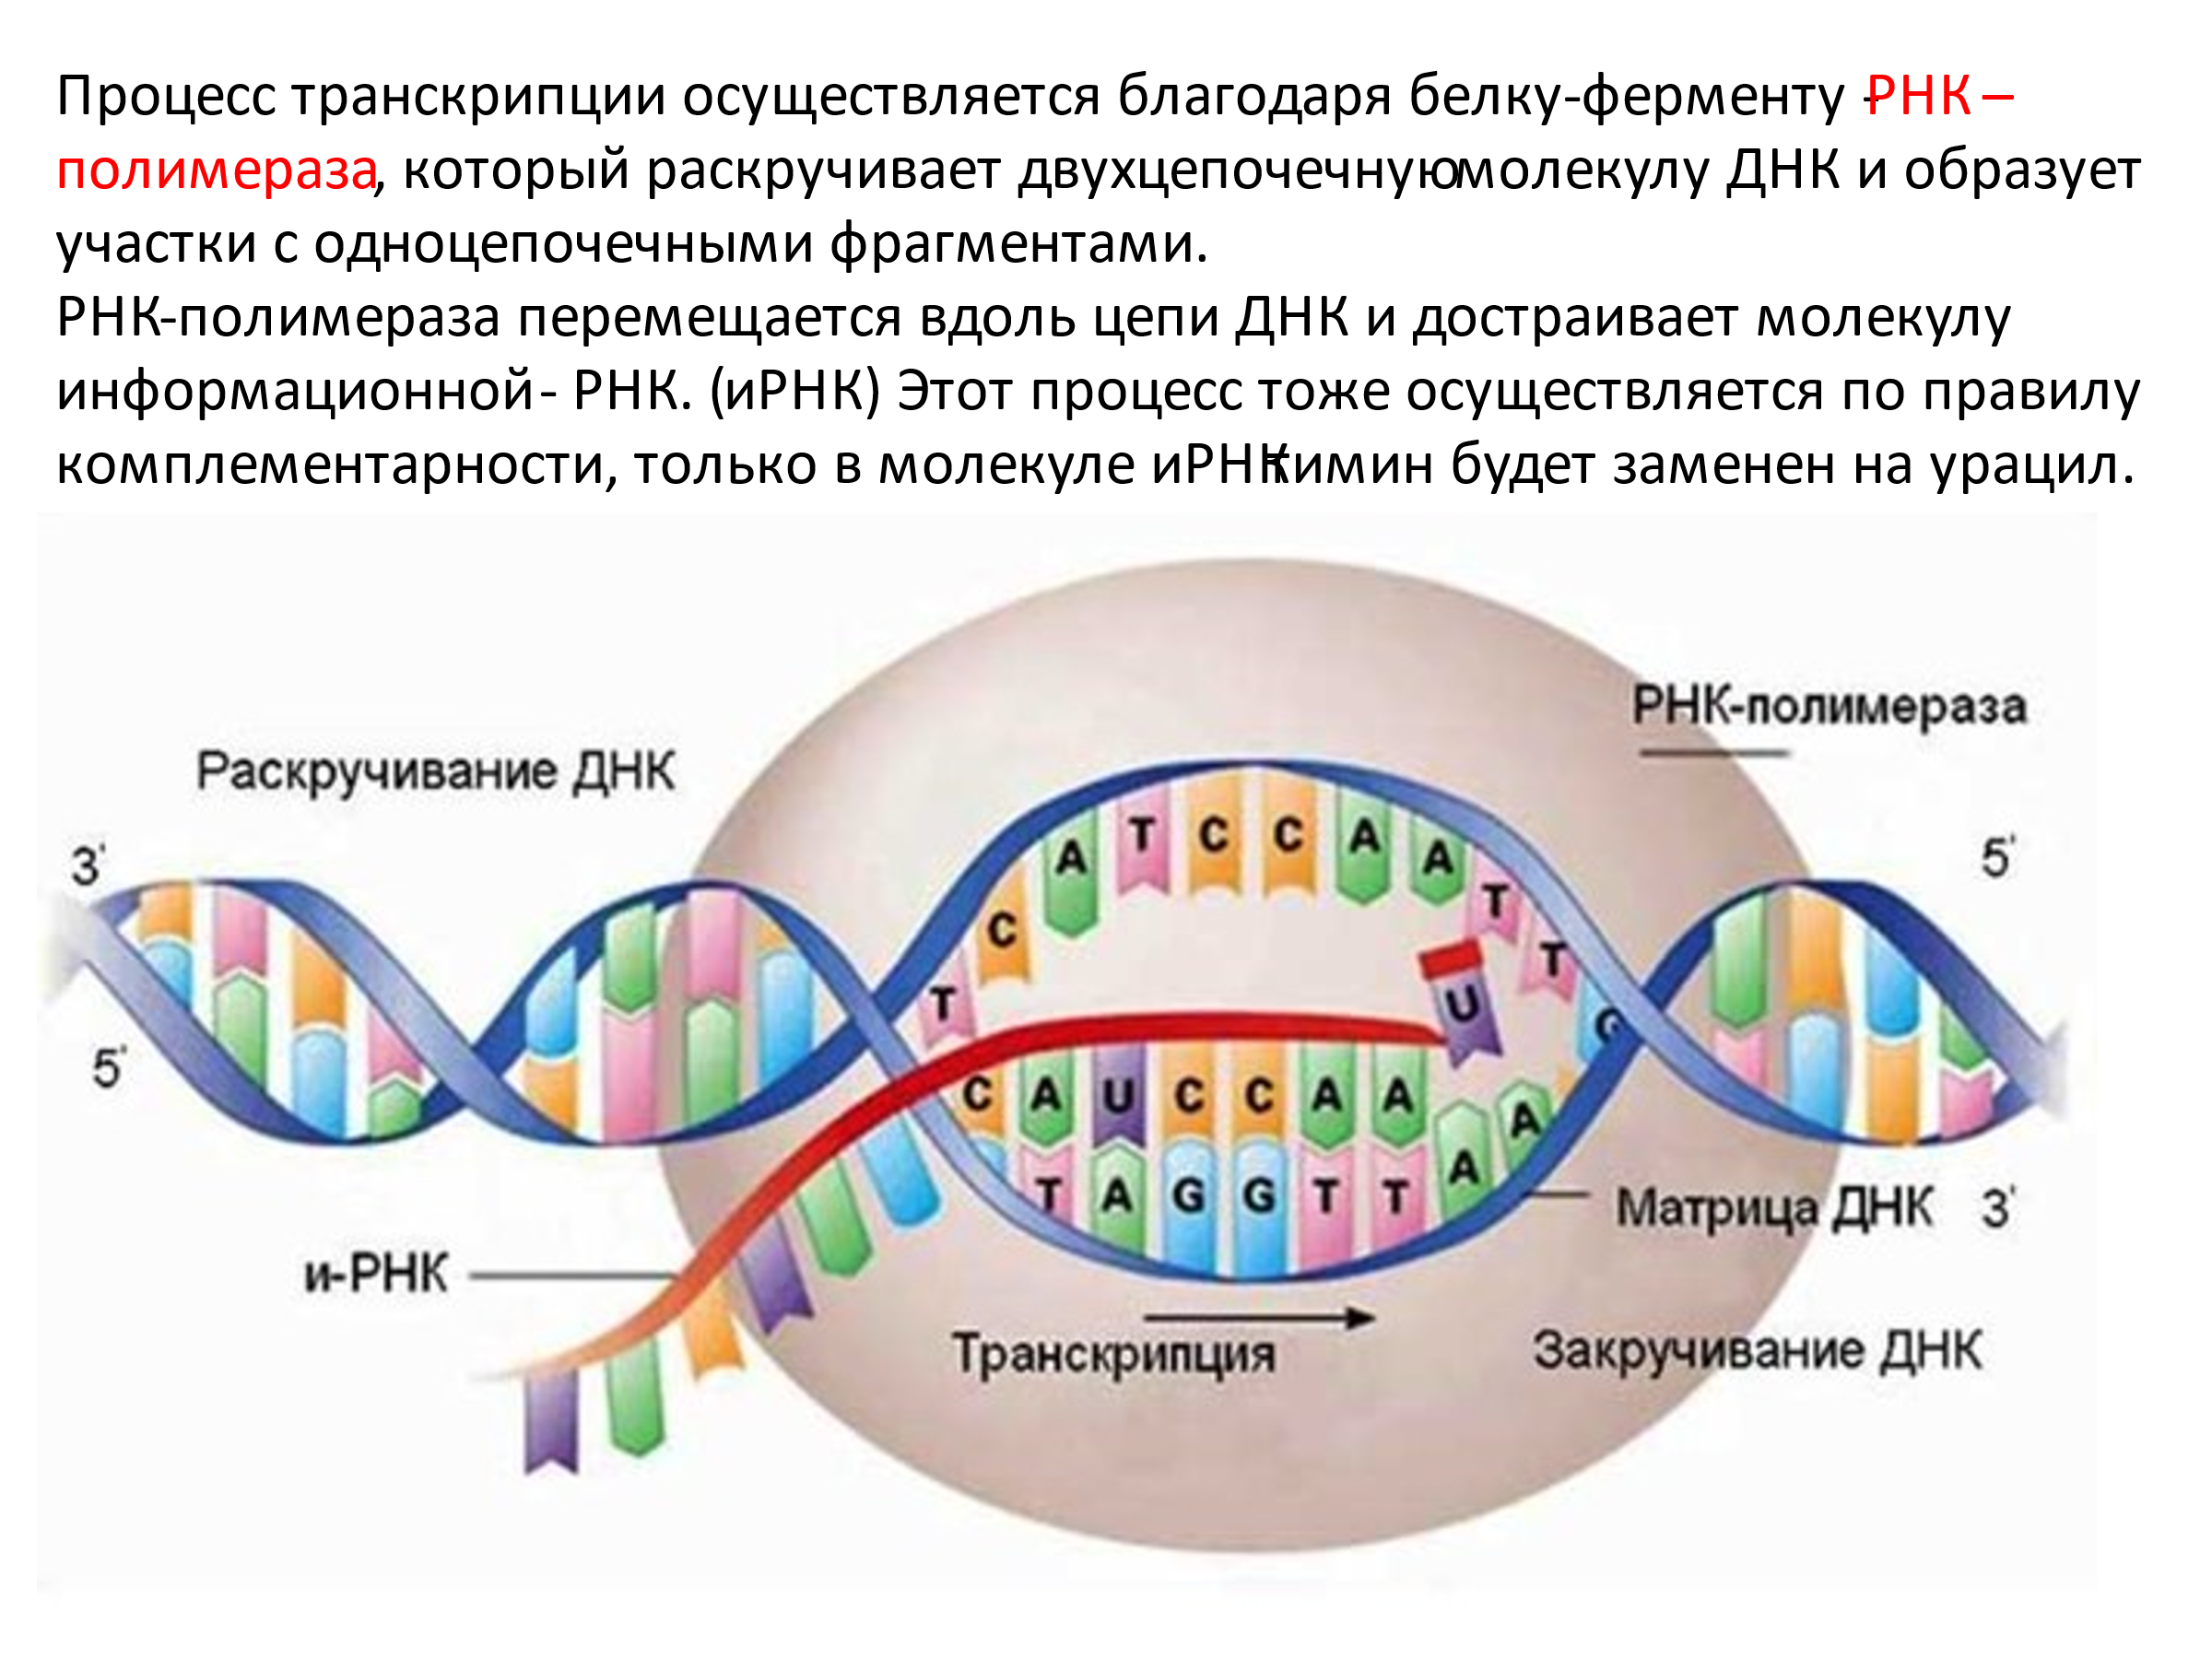 Концы транскрибируемая днк. Синтез РНК транскрипция. ДНК. Синтез ДНК И РНК. Схема образования ИРНК на матрице ДНК.